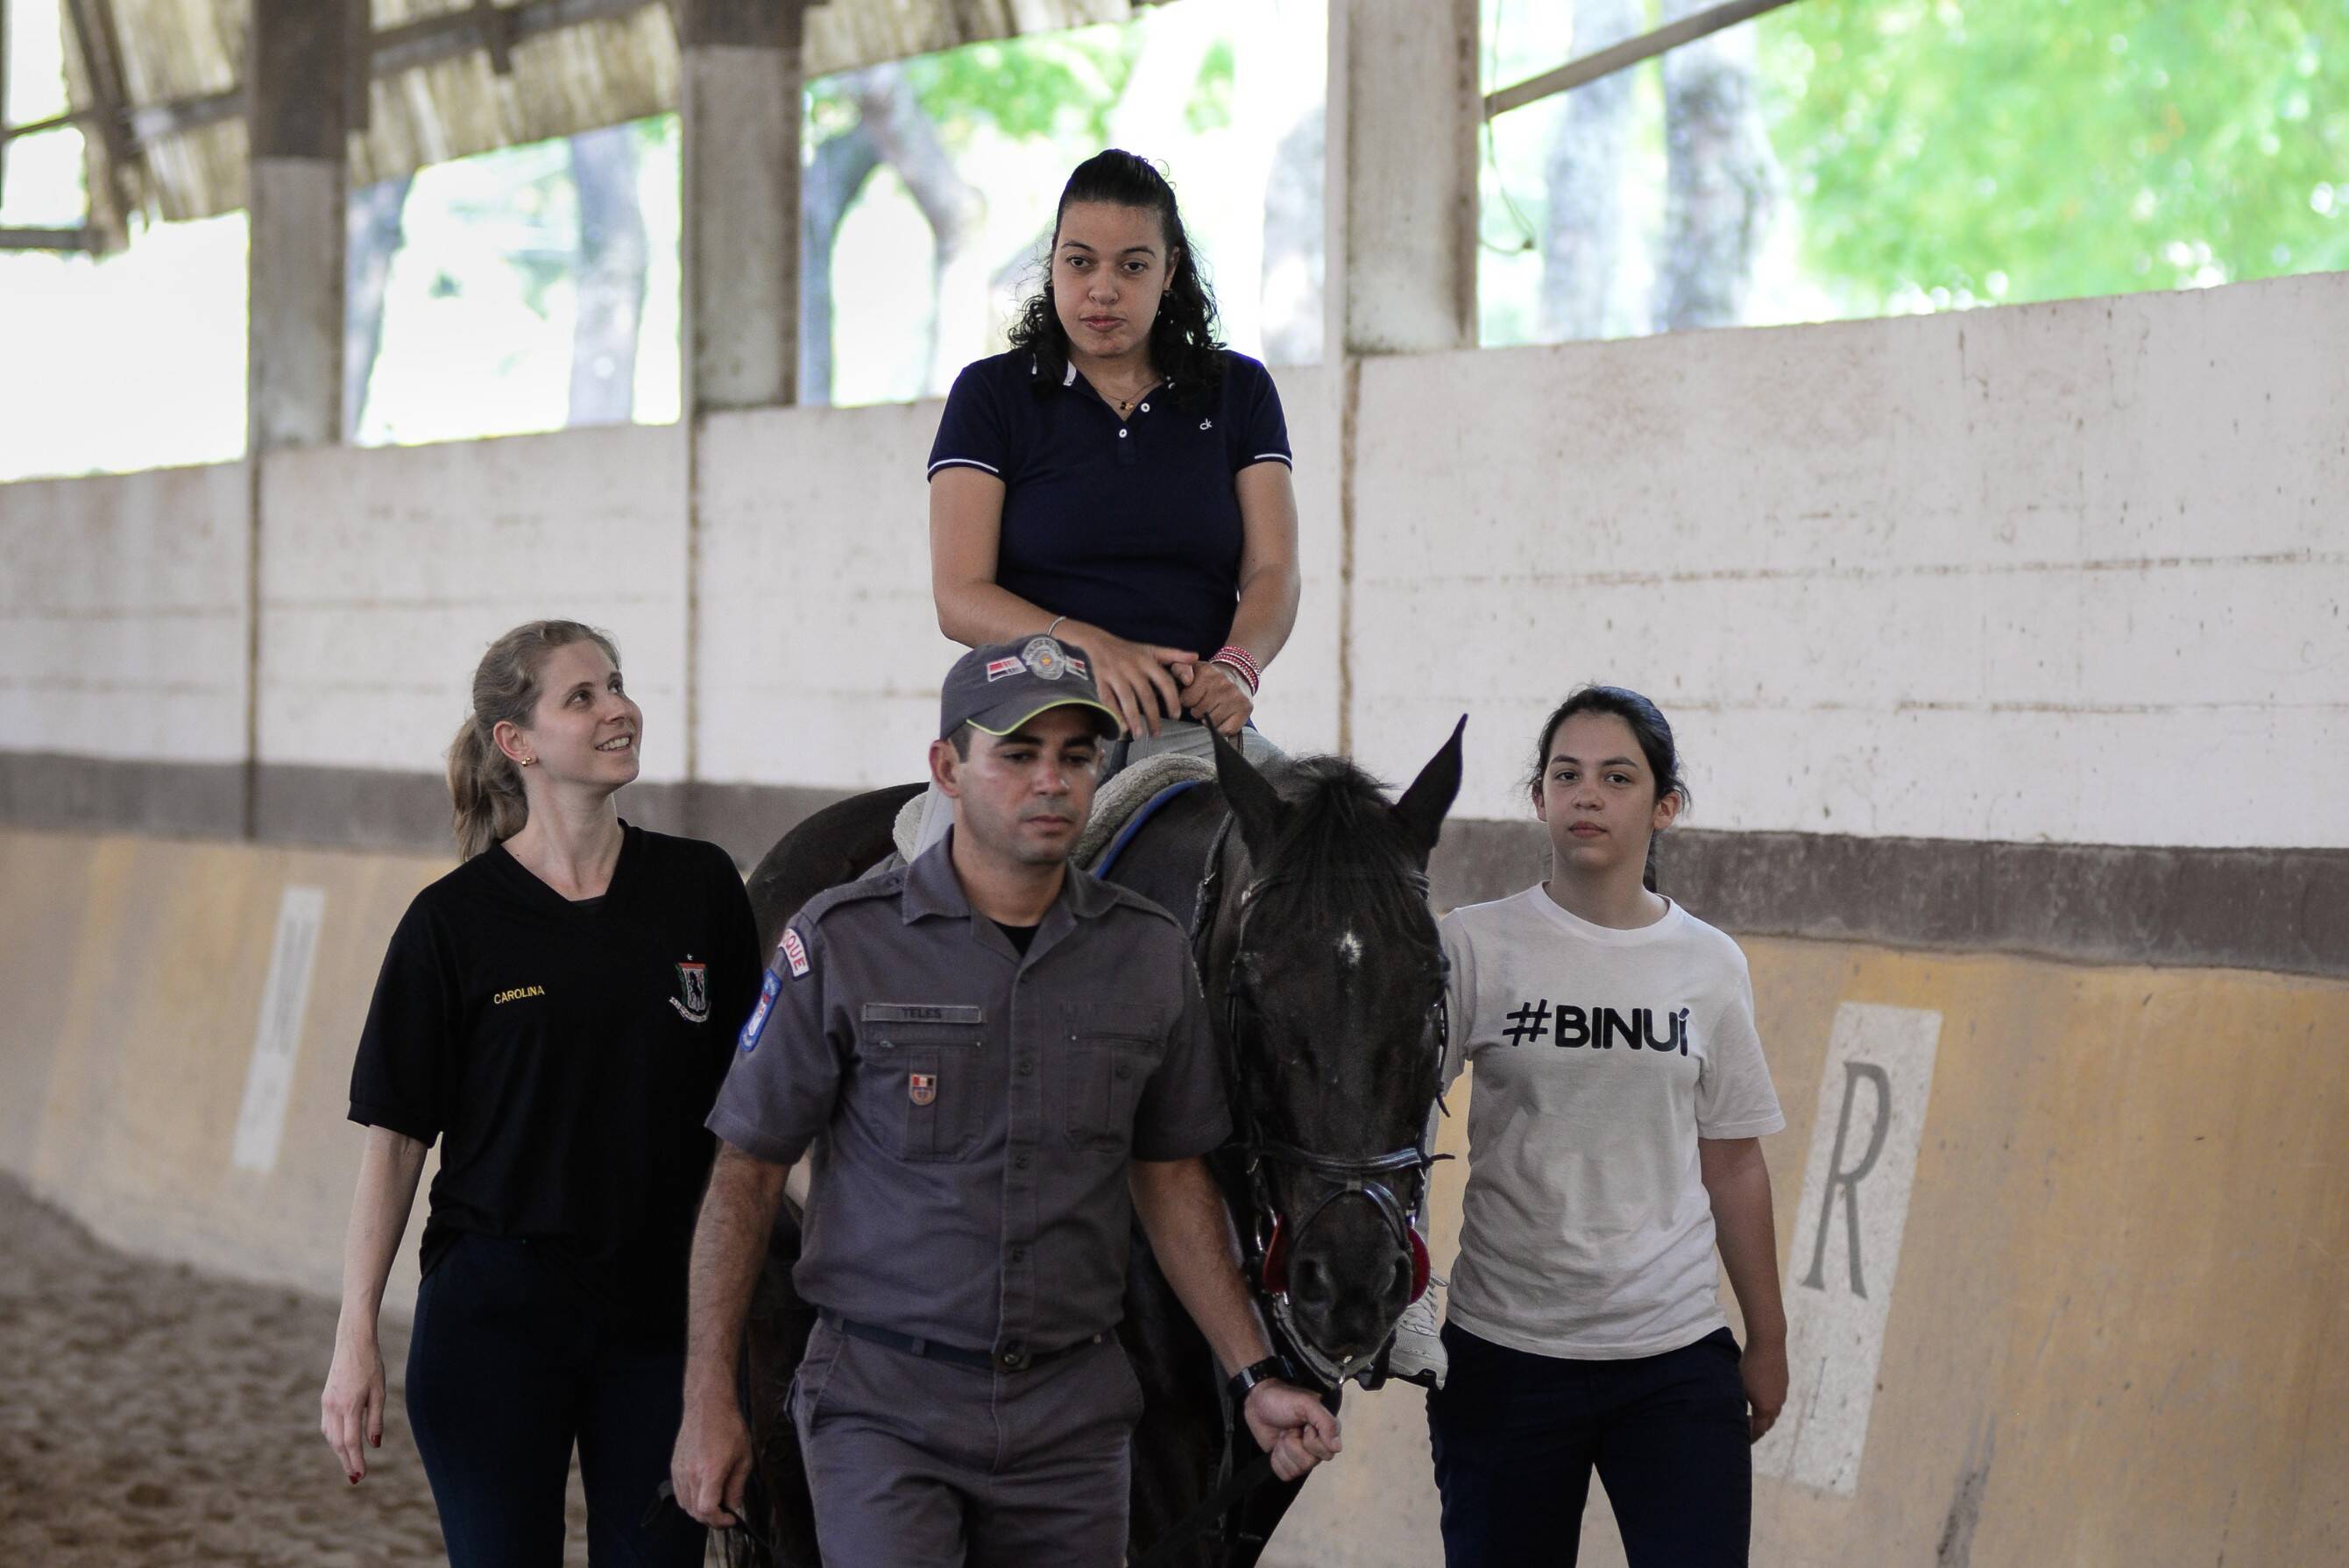 Programa de equoterapia desenvolvido pelo Regimento de Cavalaria 9 de Julho, Polícia Militar de São Paulo. Foto: Major Luis Augusto Pacheco Ambar - Comando de Choque, PMSP